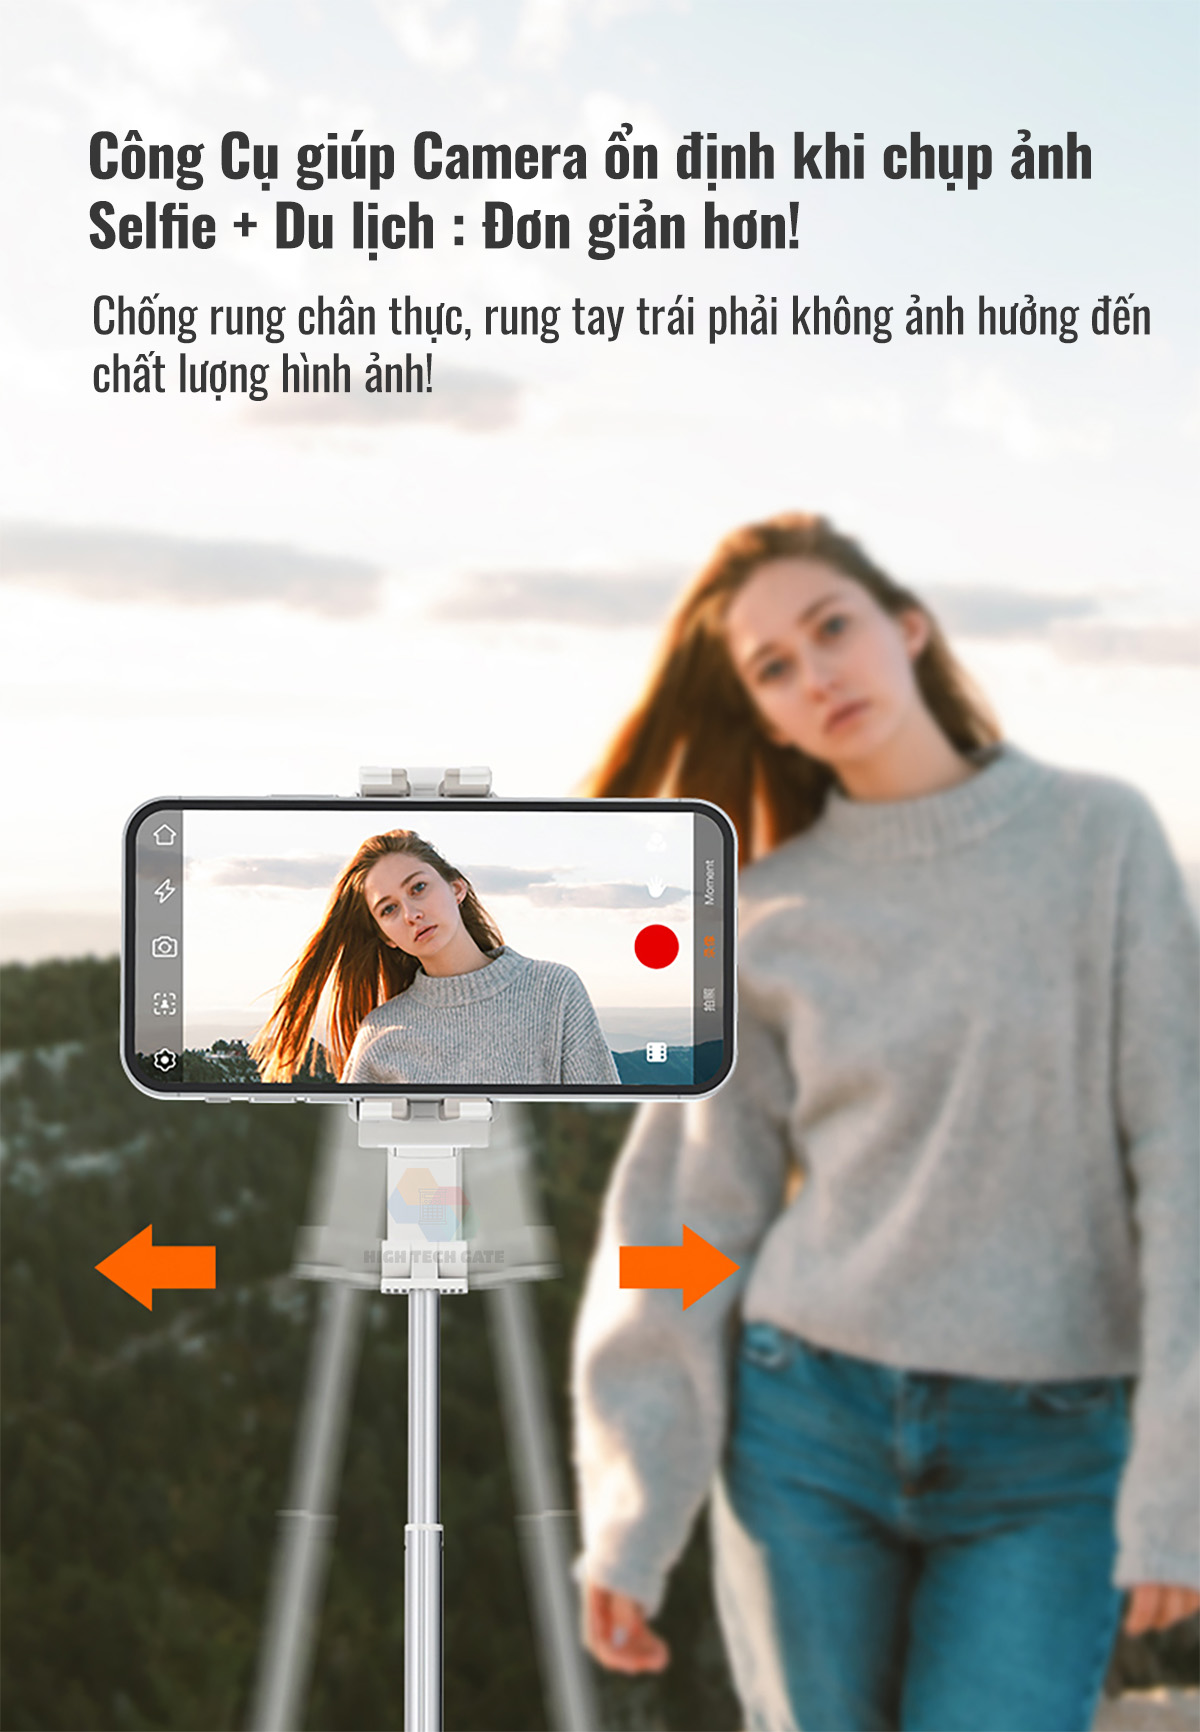 Cây quay video chống rung, chụp hình selfie 4 trong 1, tay cầm 1 trục ổn định Isteady Q có gimbal tracking AI 360, hàng chính hãng